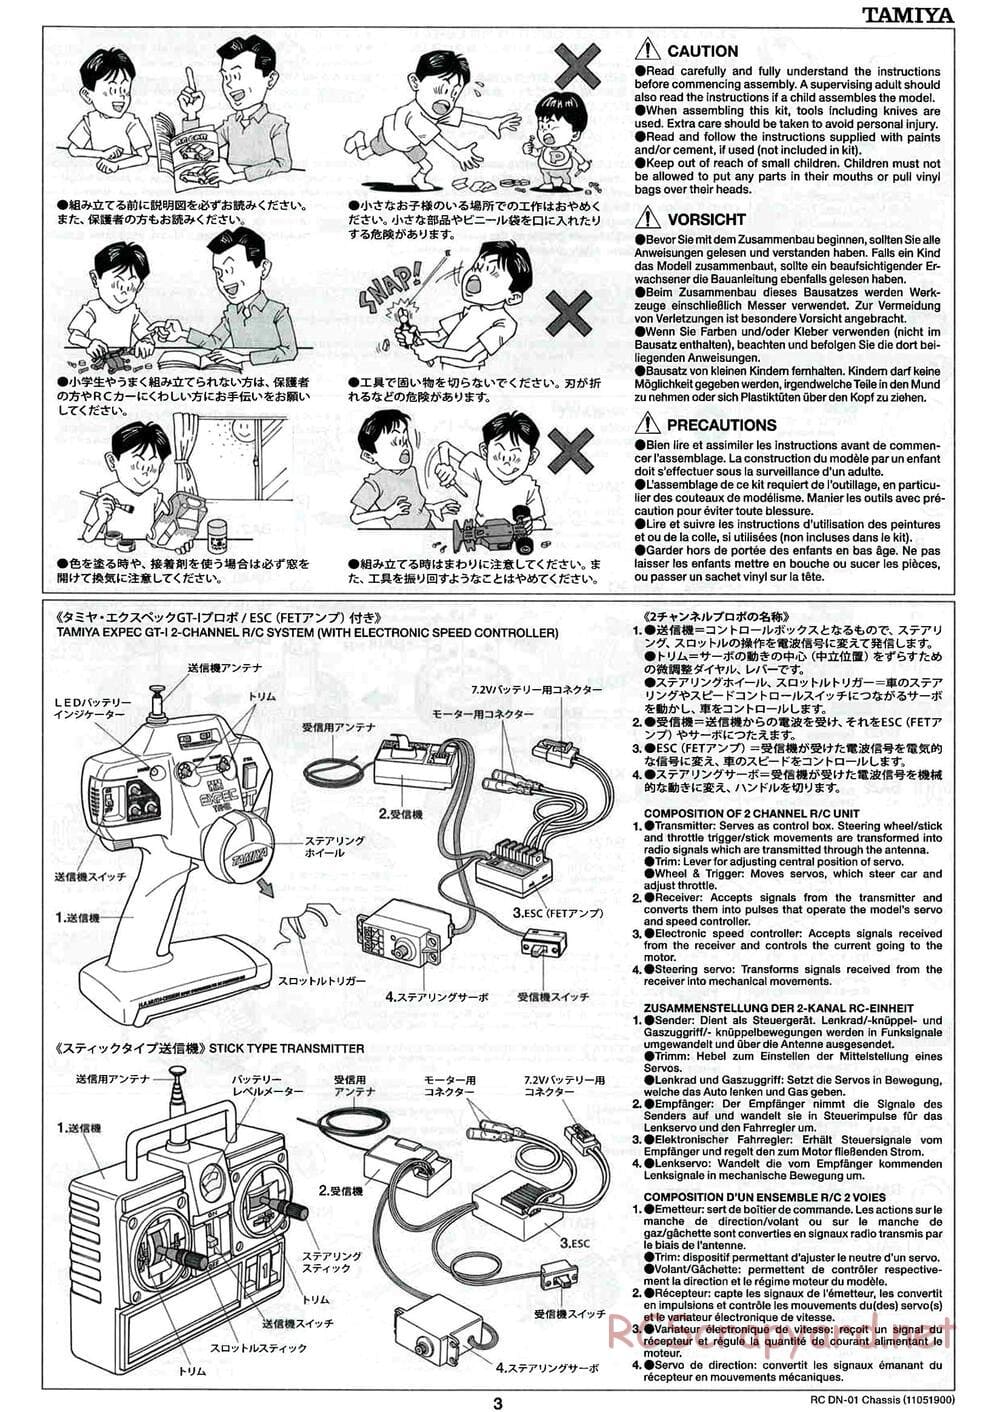 Tamiya - DN-01 Chassis - Manual - Page 3